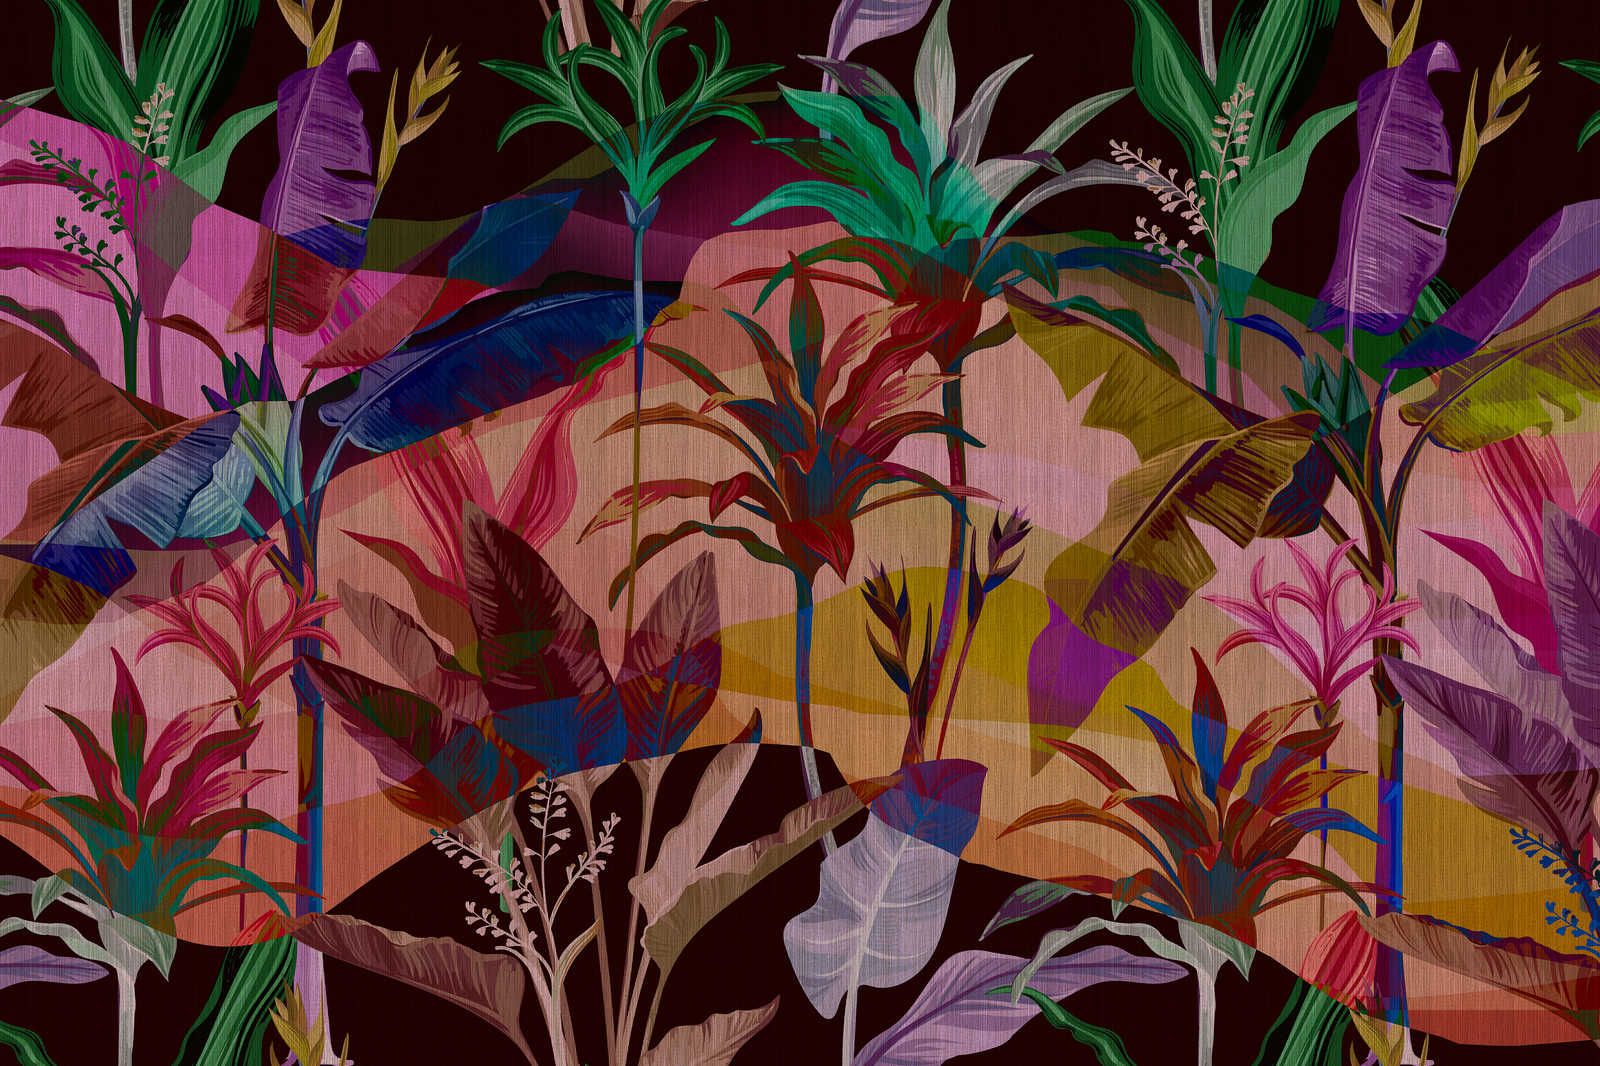             Palmyra 1 - Jungle canvas schilderij kleurrijke & abstracte bladeren - 0,90 m x 0,60 m
        